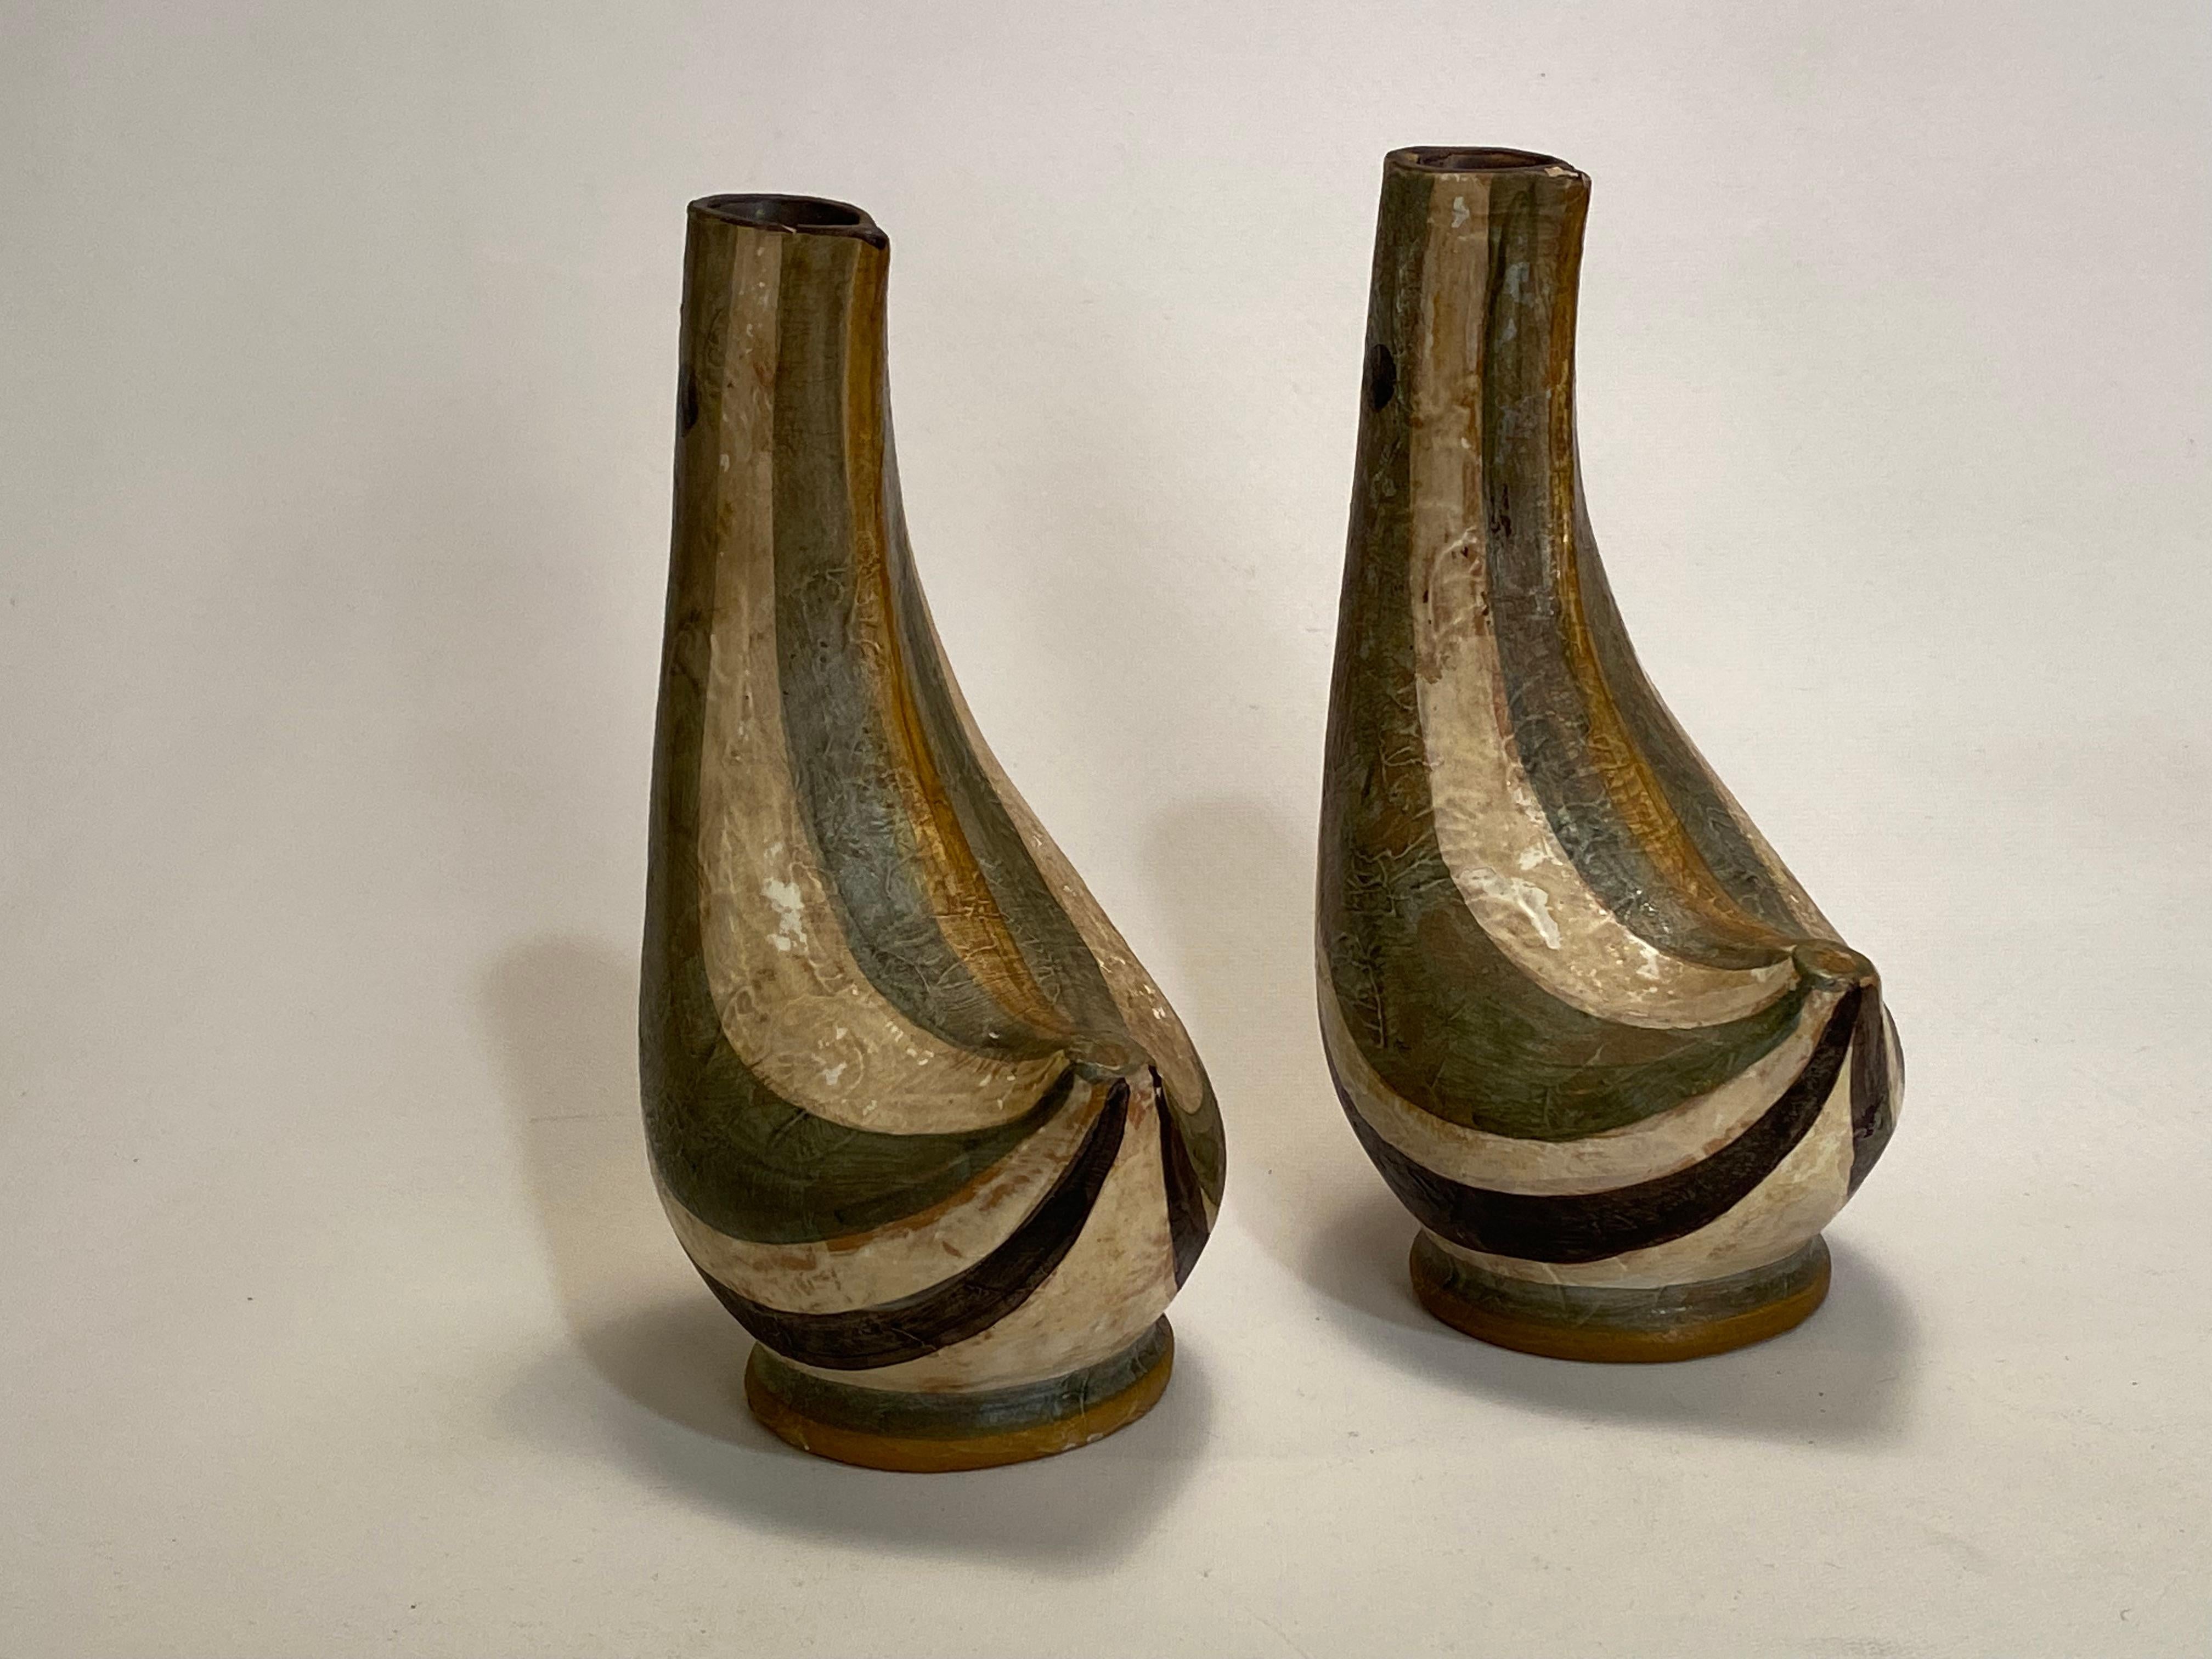 Ein feines Paar handgefertigte Bitossi Kunst Keramik stilisierten Vogel Vasen. Tolle gedeckte Farbpalette mit olivgrüner, schwarzer und weißer Glasur. Der Fingerabdruck am Auge des Vogels ist eine wirklich bemerkenswerte Spur der